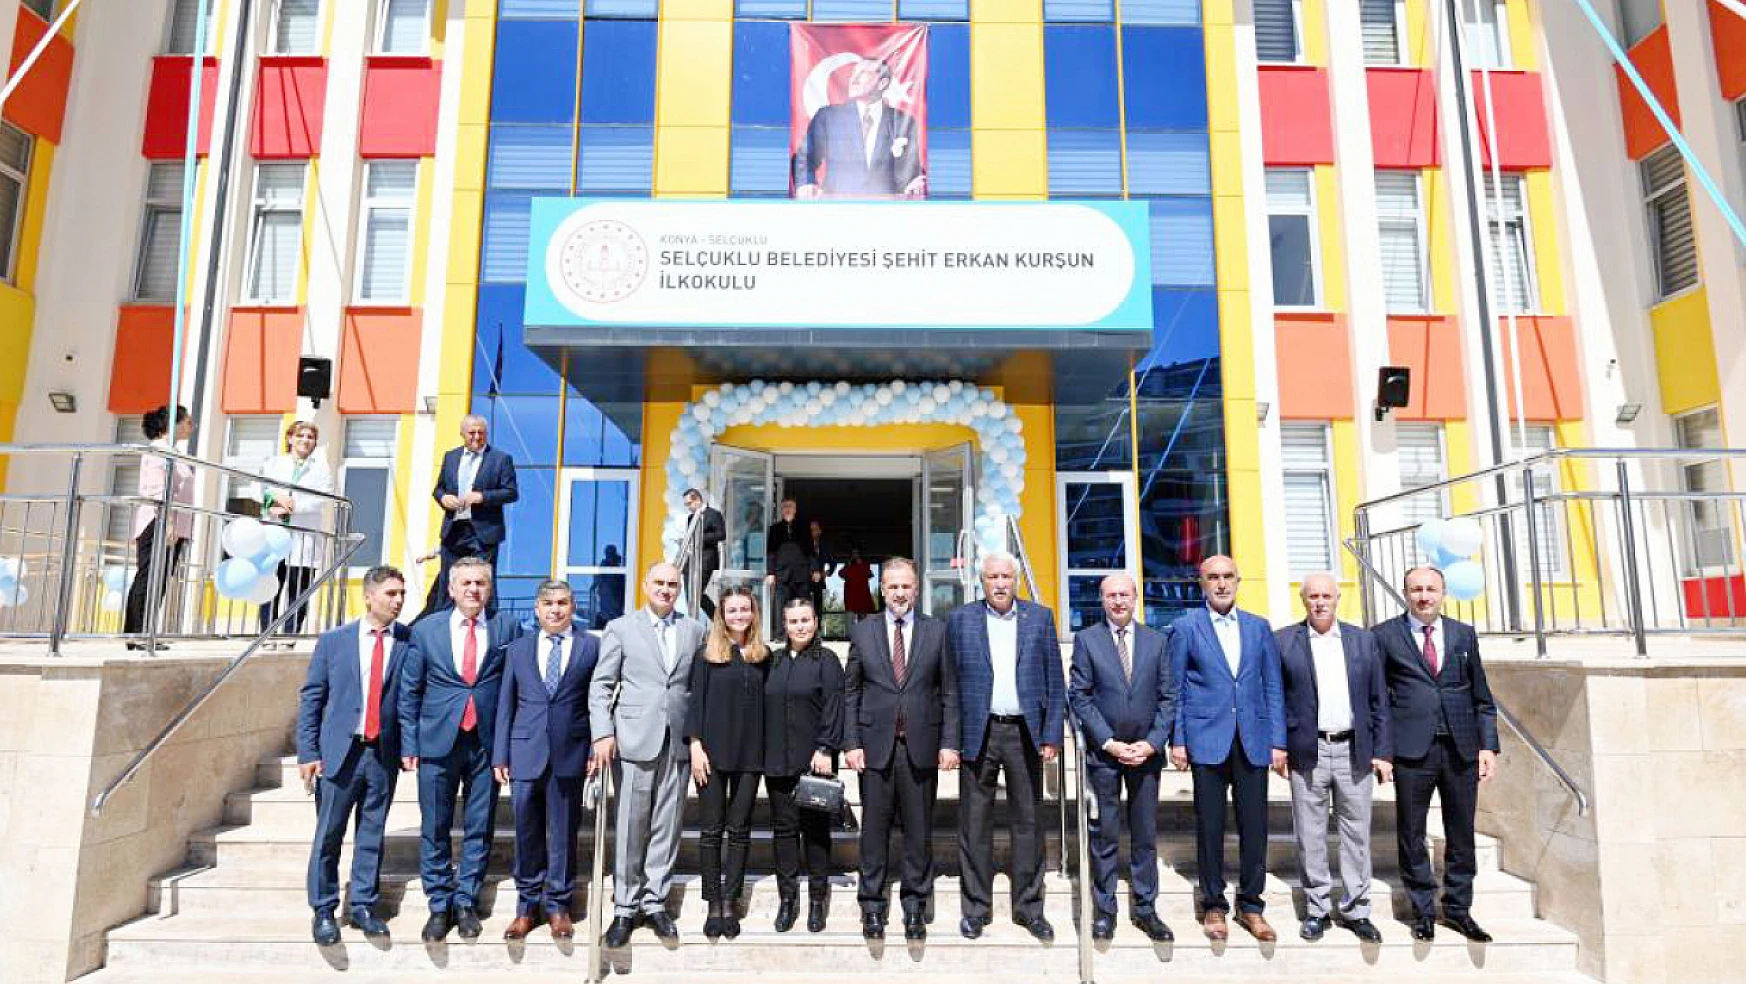 Maliyeti 70 milyon TL! Konya'da Şehit Erkan Kurşun İlkokulu açıldı!